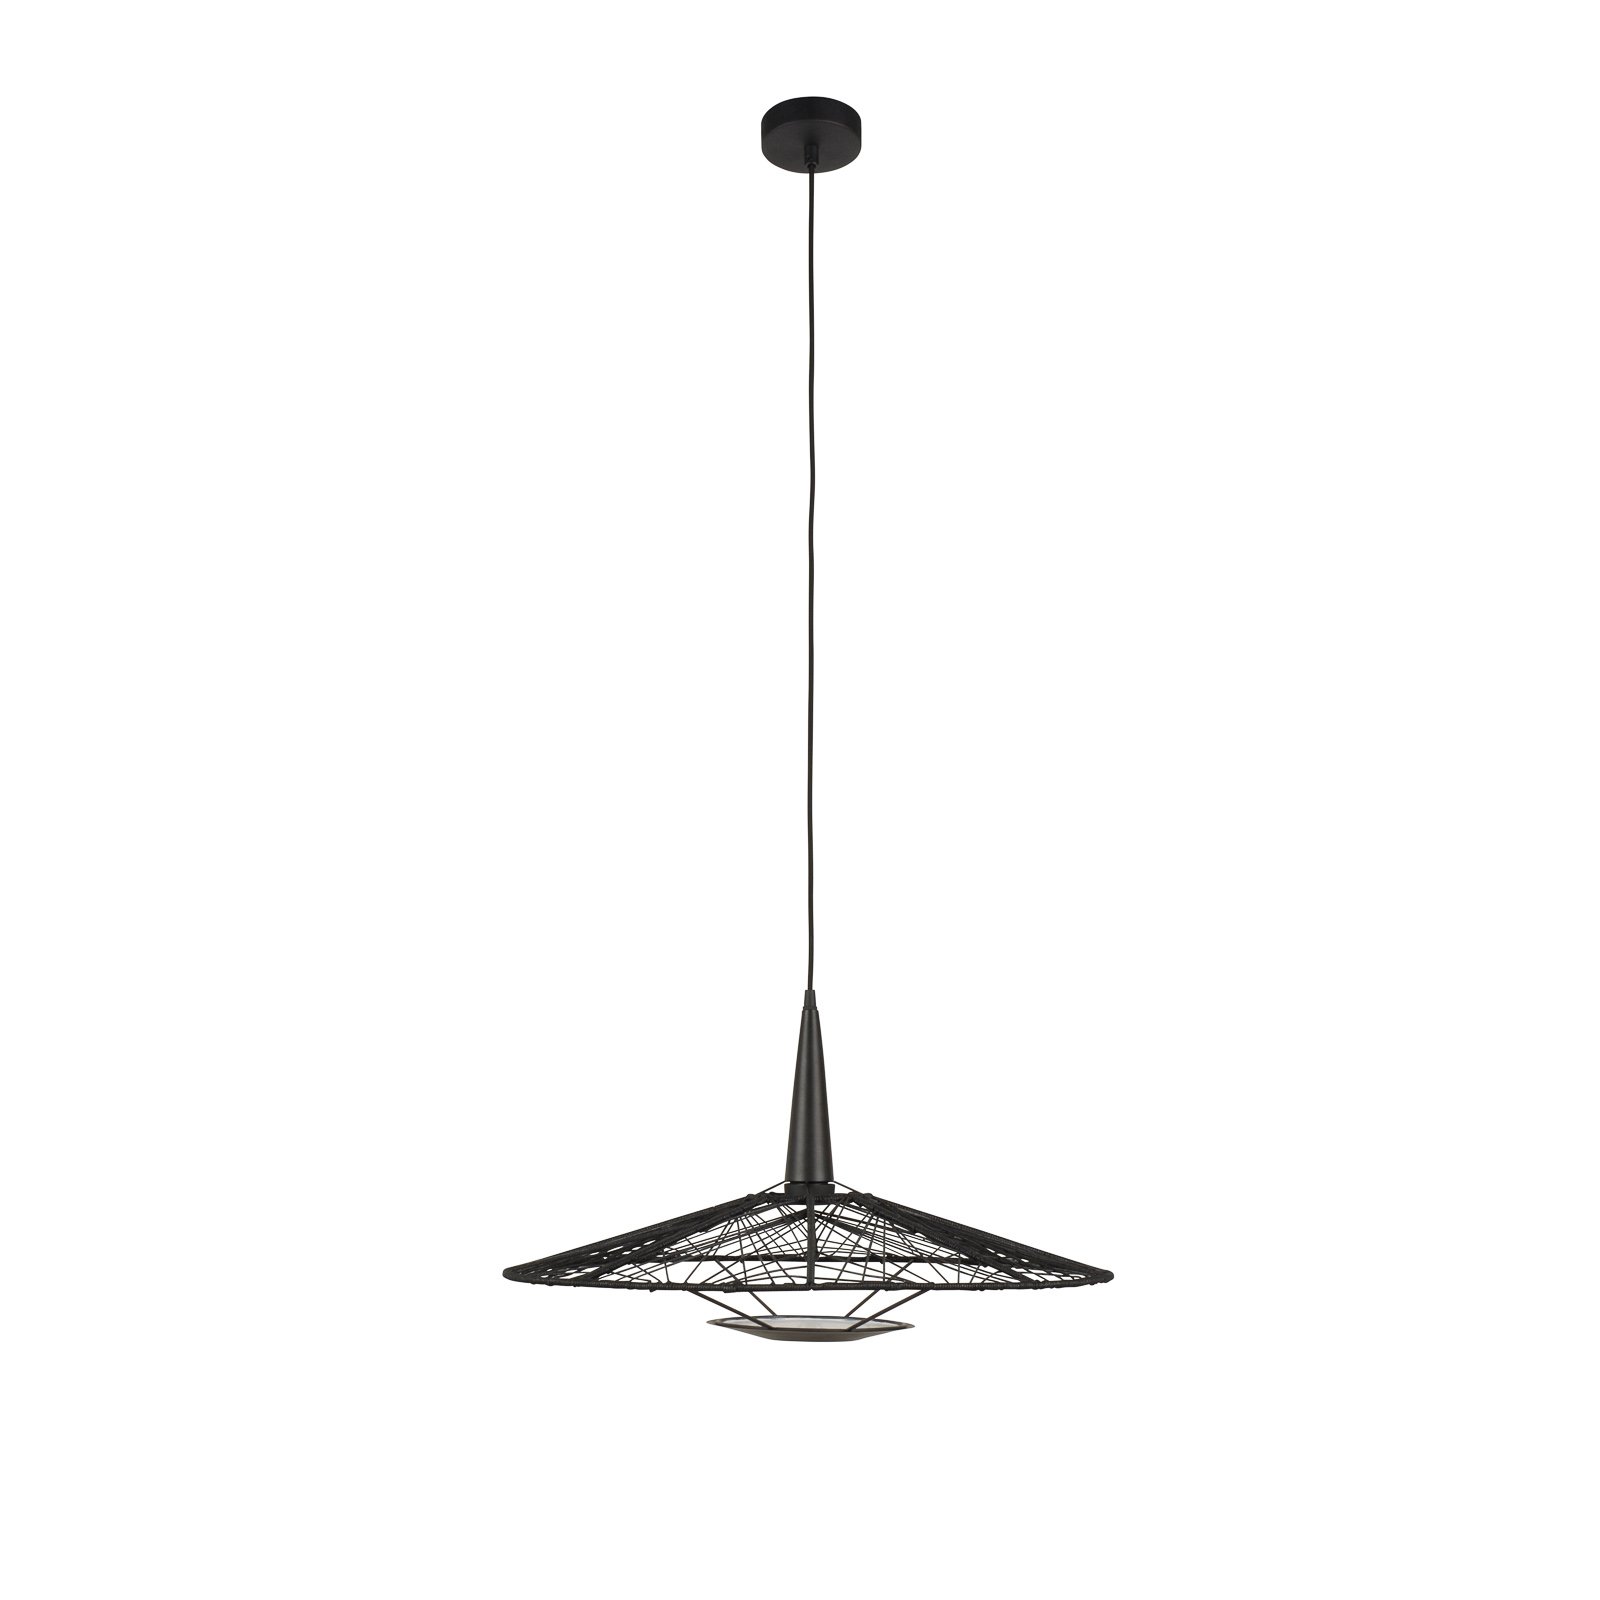 Forestier Carpa M hanglamp, zwart, Ø 60 cm